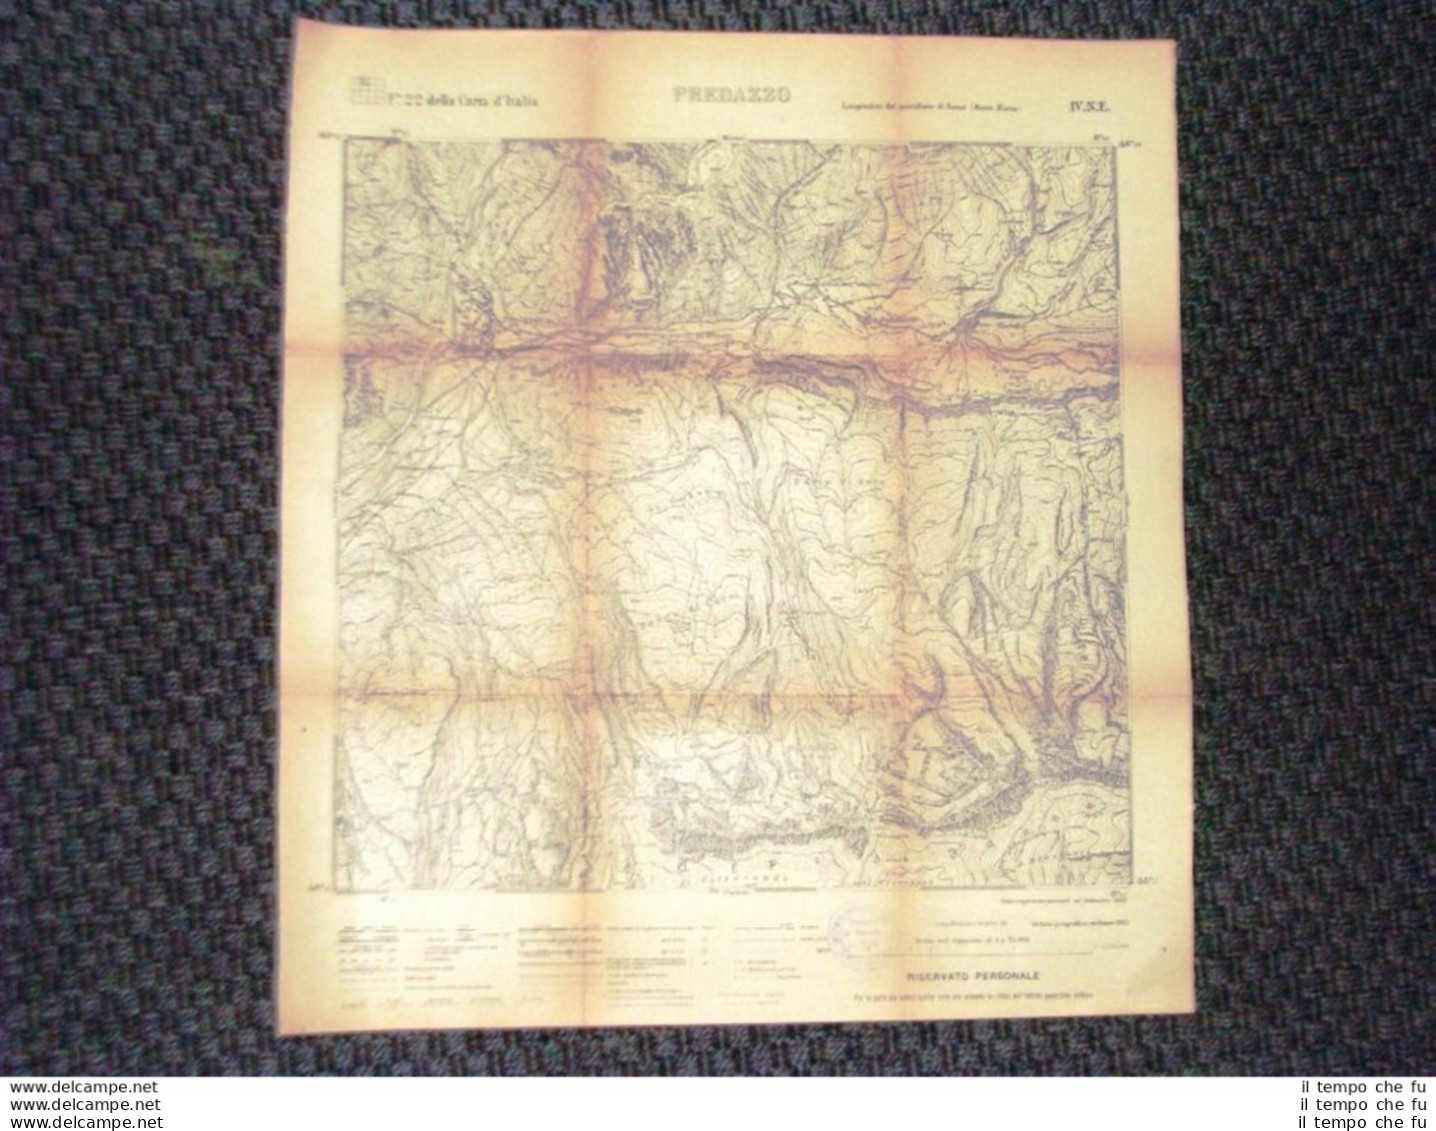 Grande Carta Topografica Predazzo O Pardatsch Trentino Dettagliatissima I.G.M. - Landkarten